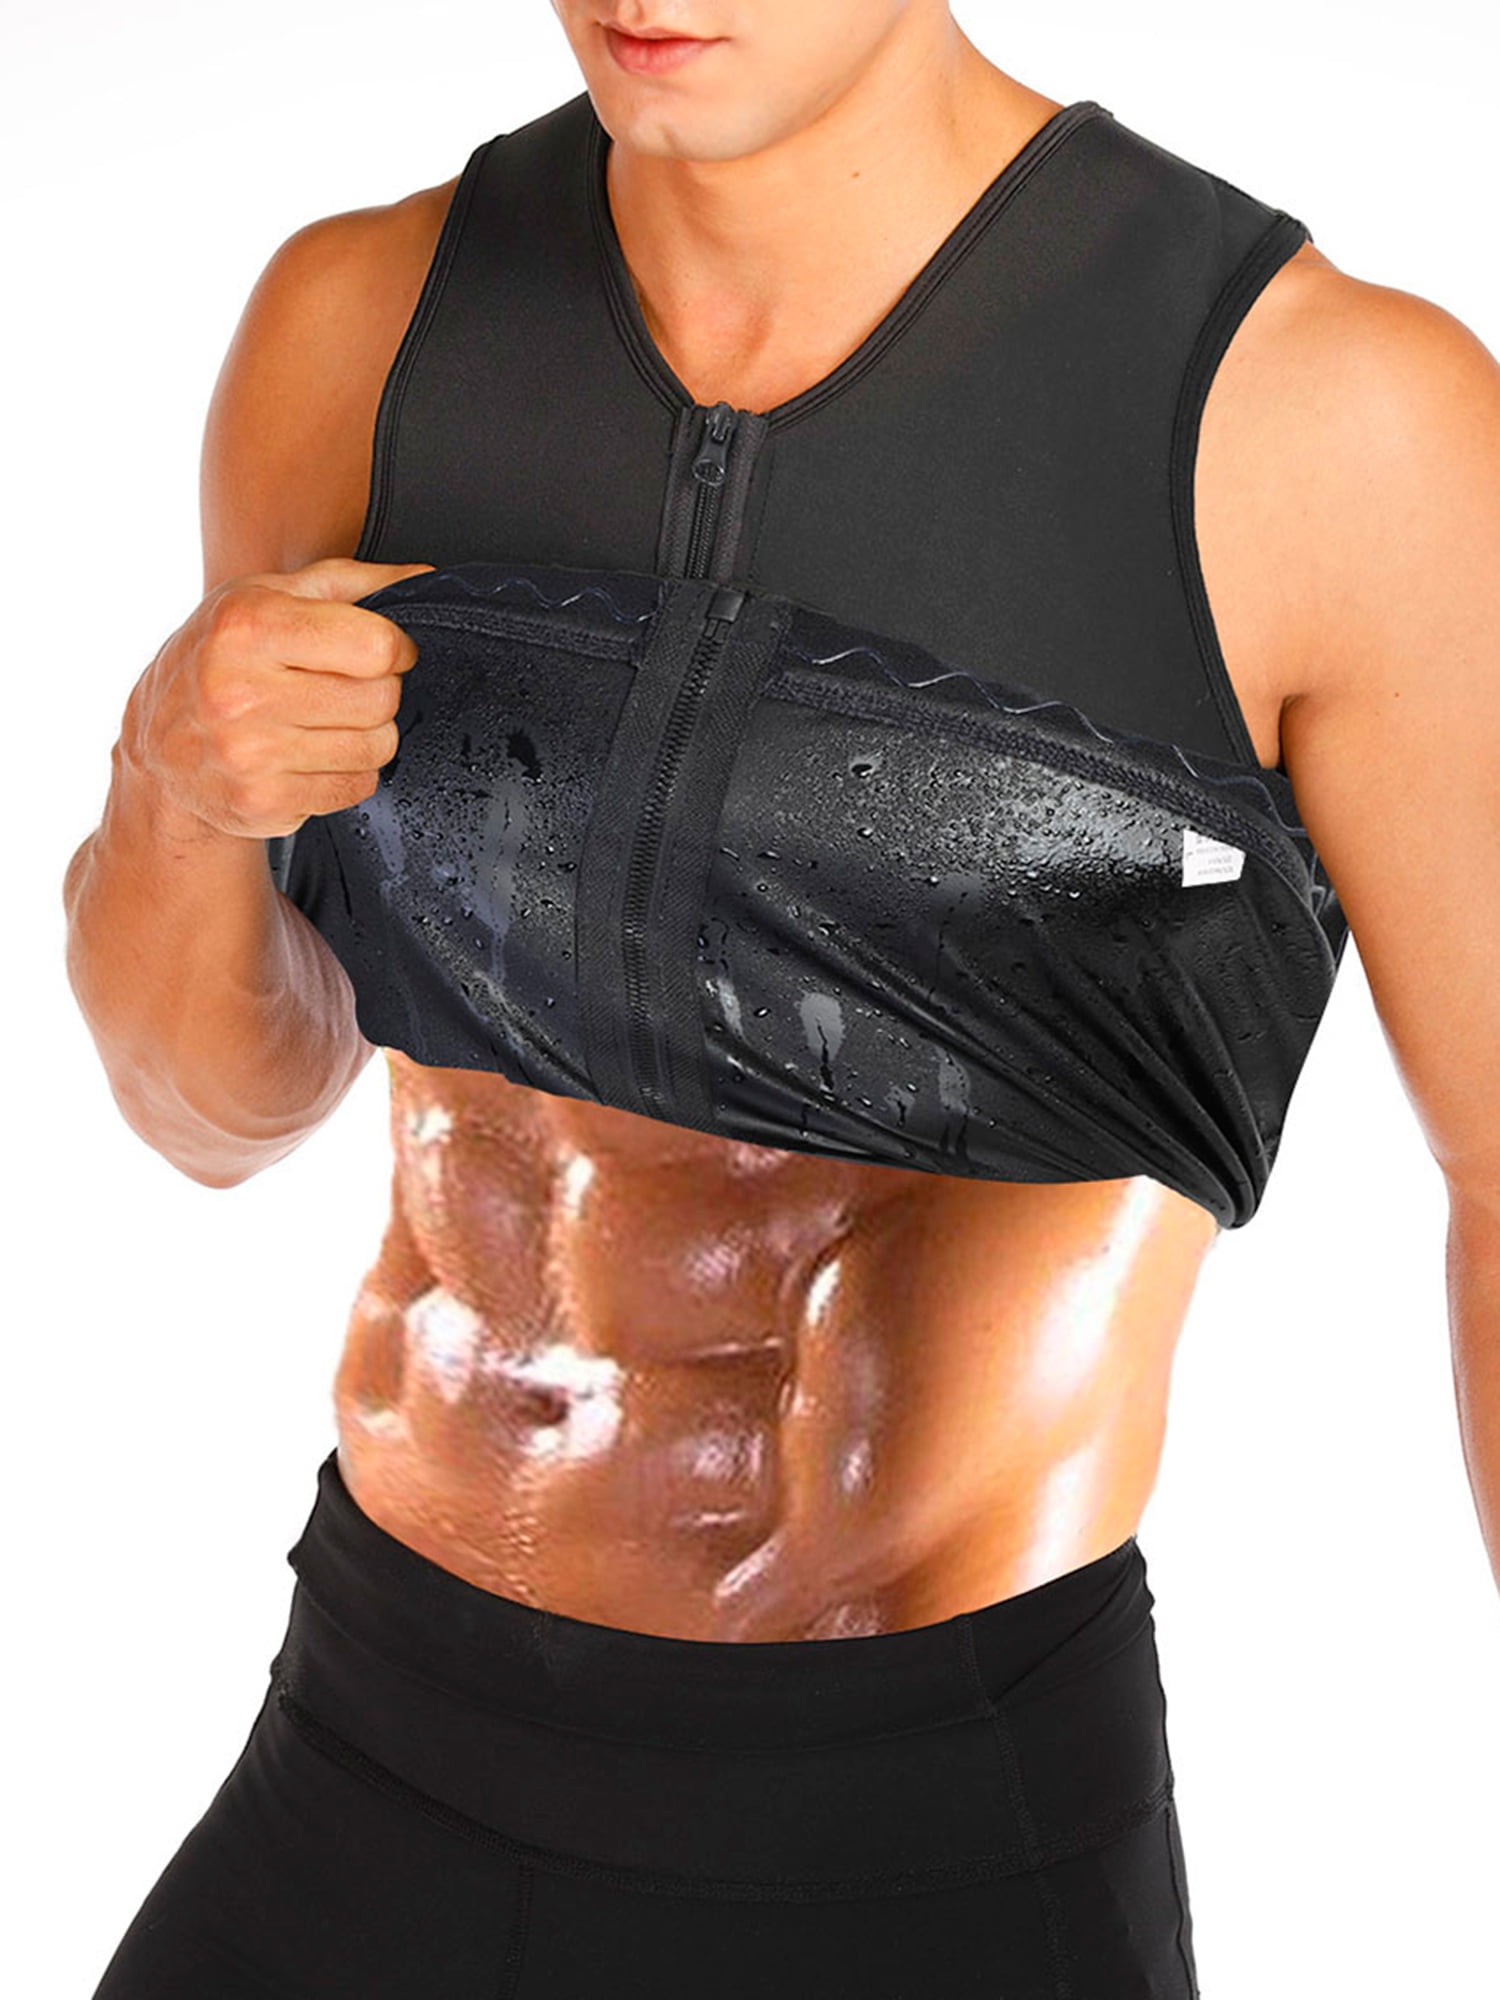 Men Waist Cincher Neoperen Sport Vest Suana Sweat Cami Tank Top Workout Suit UK 